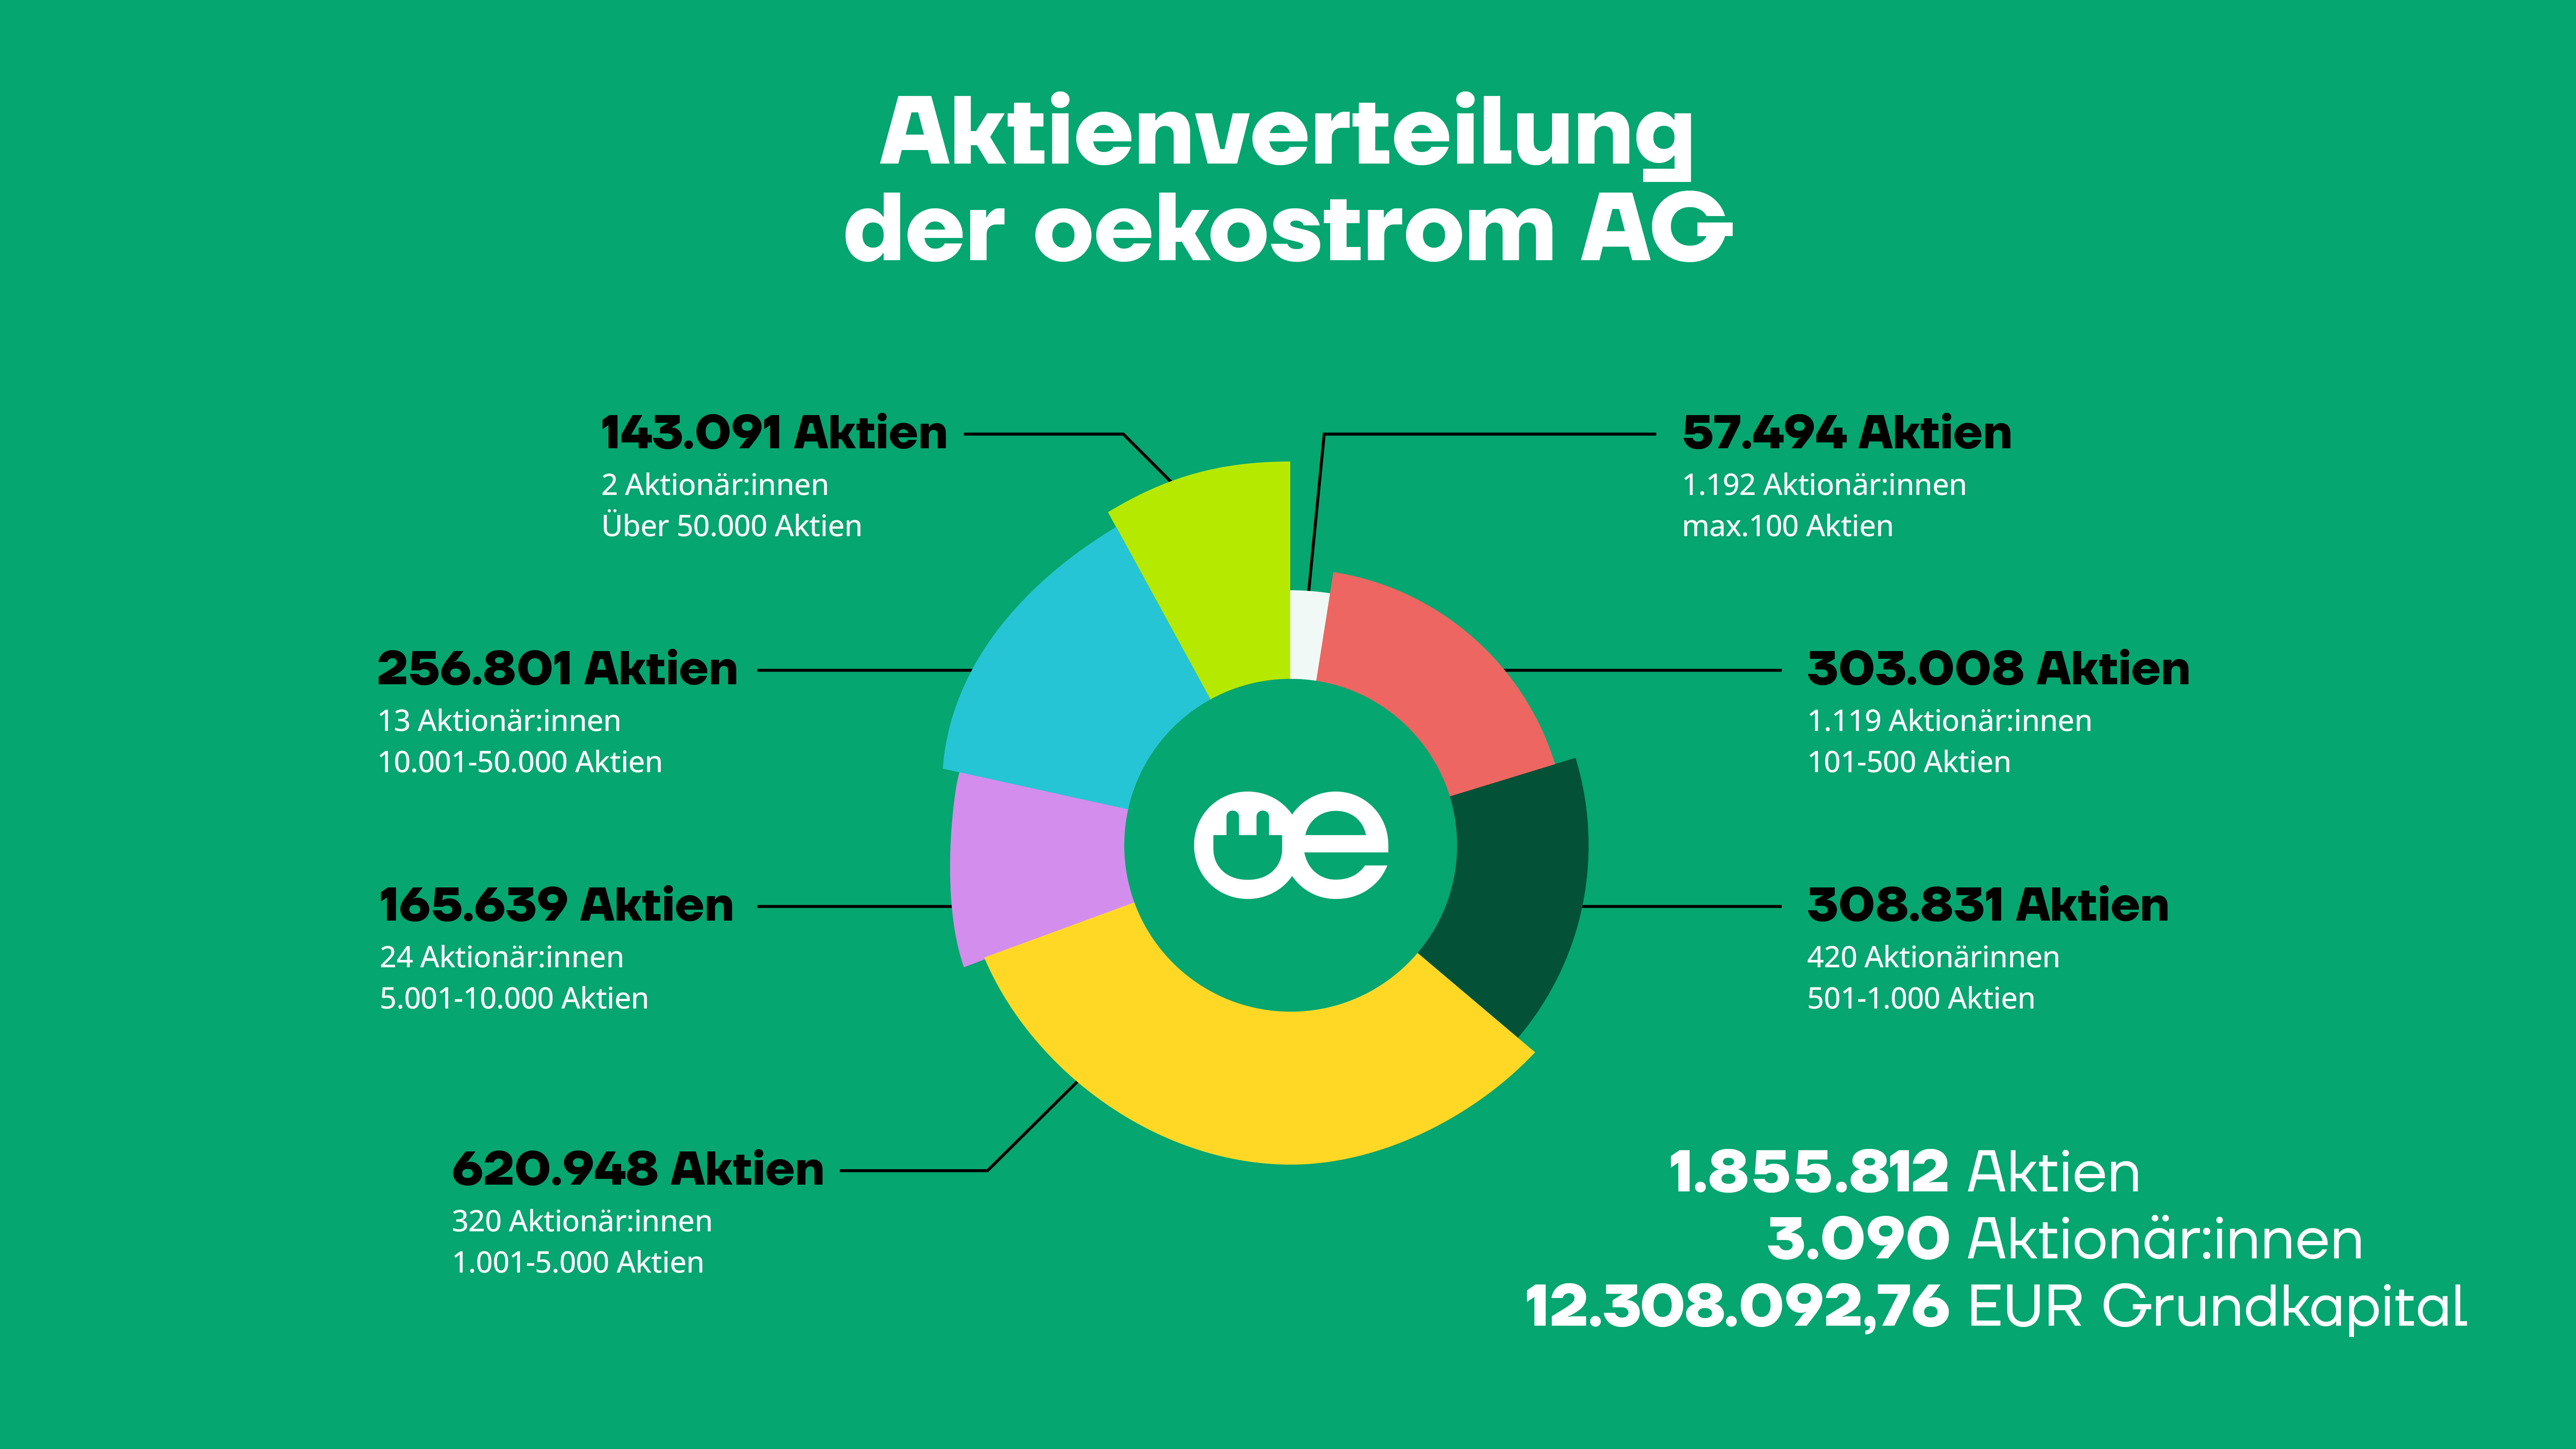 Aktienverteilung der oekostrom AG